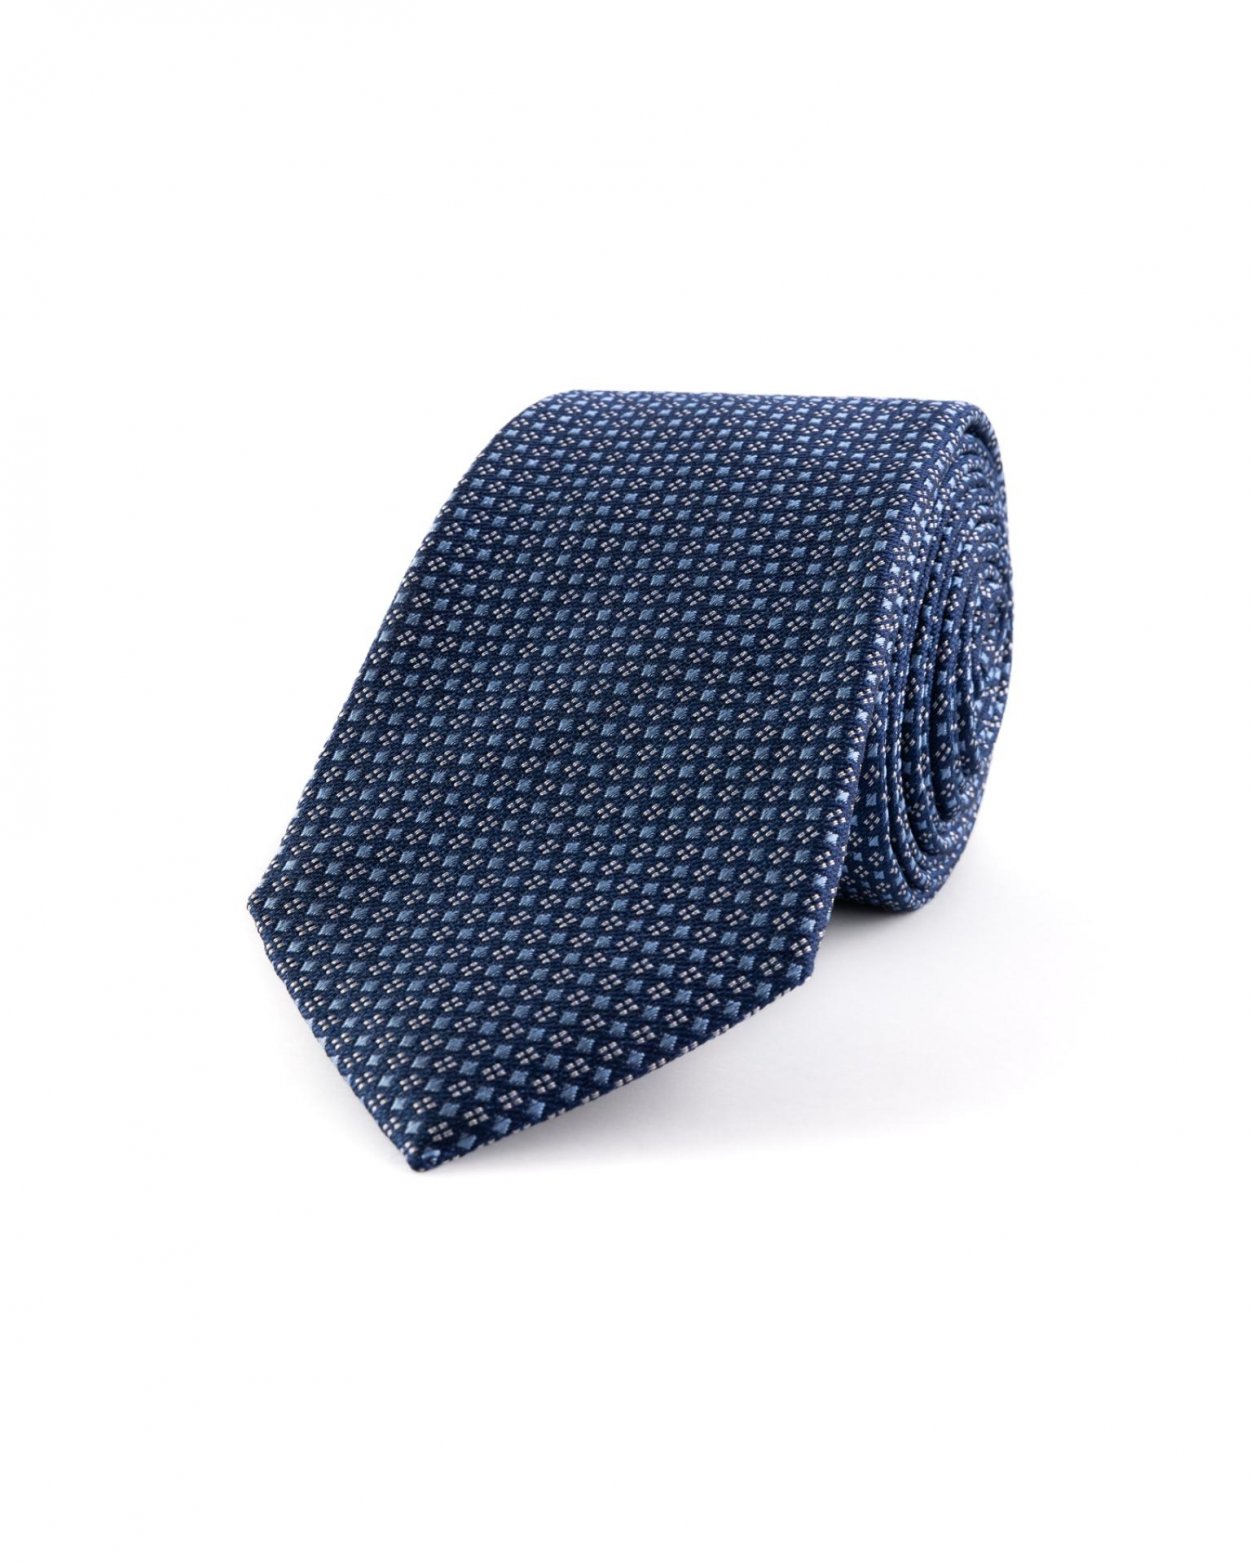 Modrá hedvábná kravata s jemným vzorem